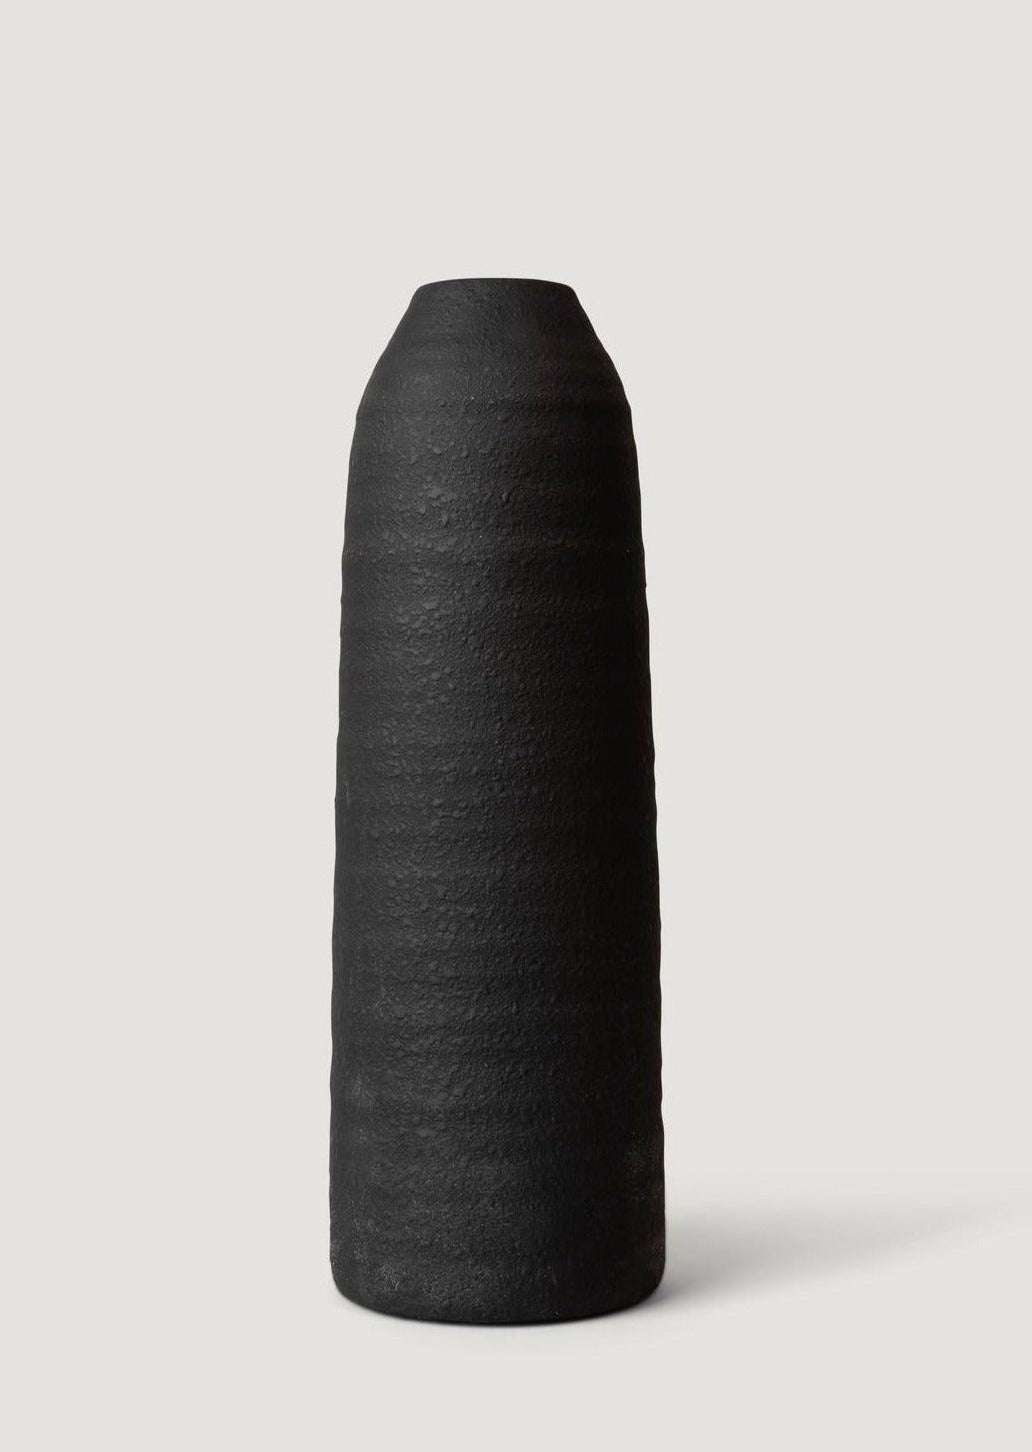 Tall Glazed Ceramic Vase in Matte Black